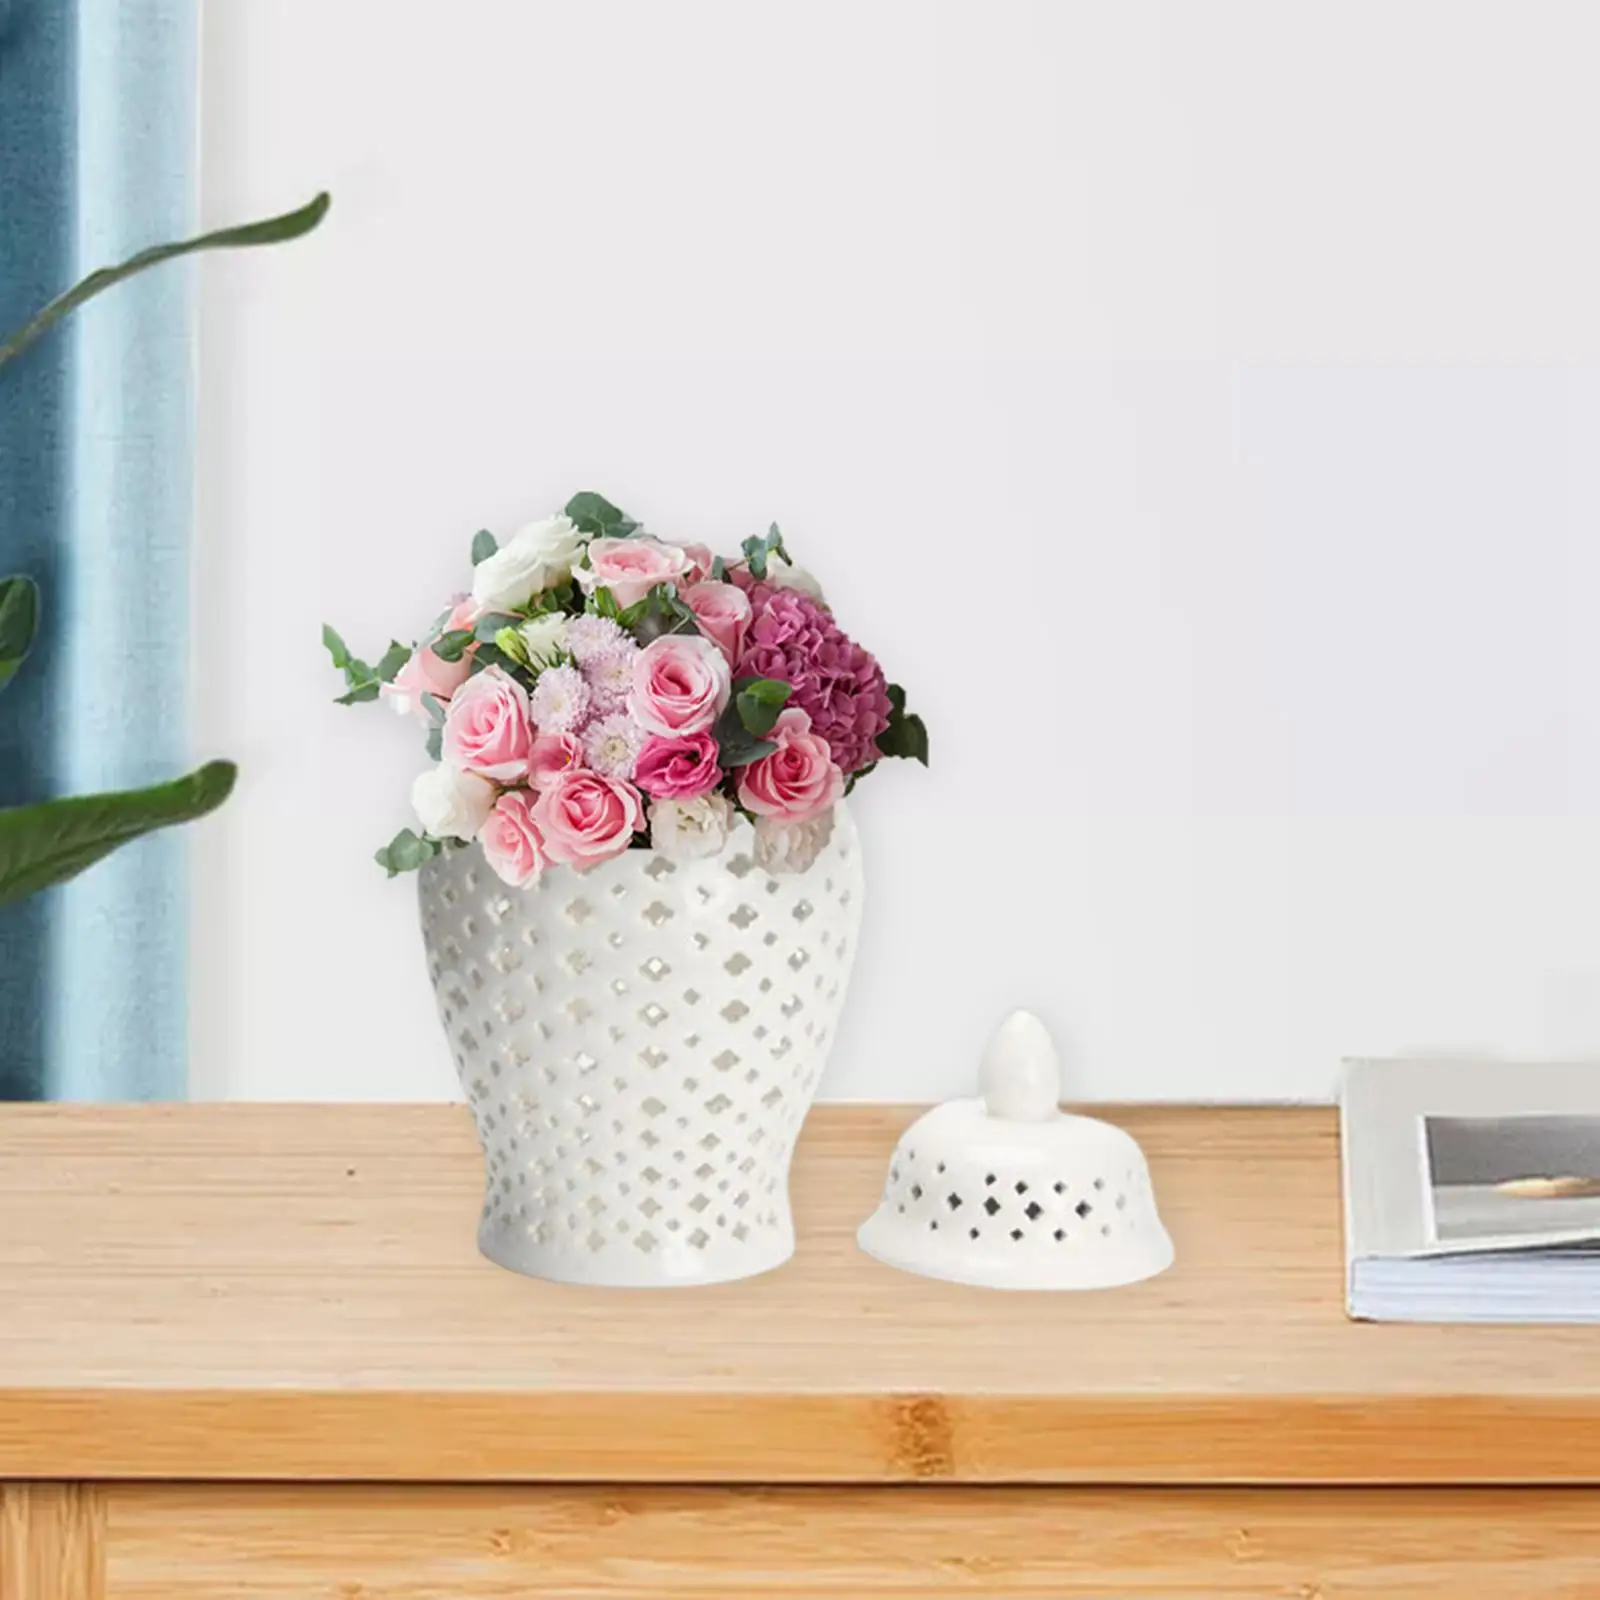 

Керамическая банка для имбиря, ваза для цветов с крышкой, фарфоровая банка ручной работы в восточном стиле